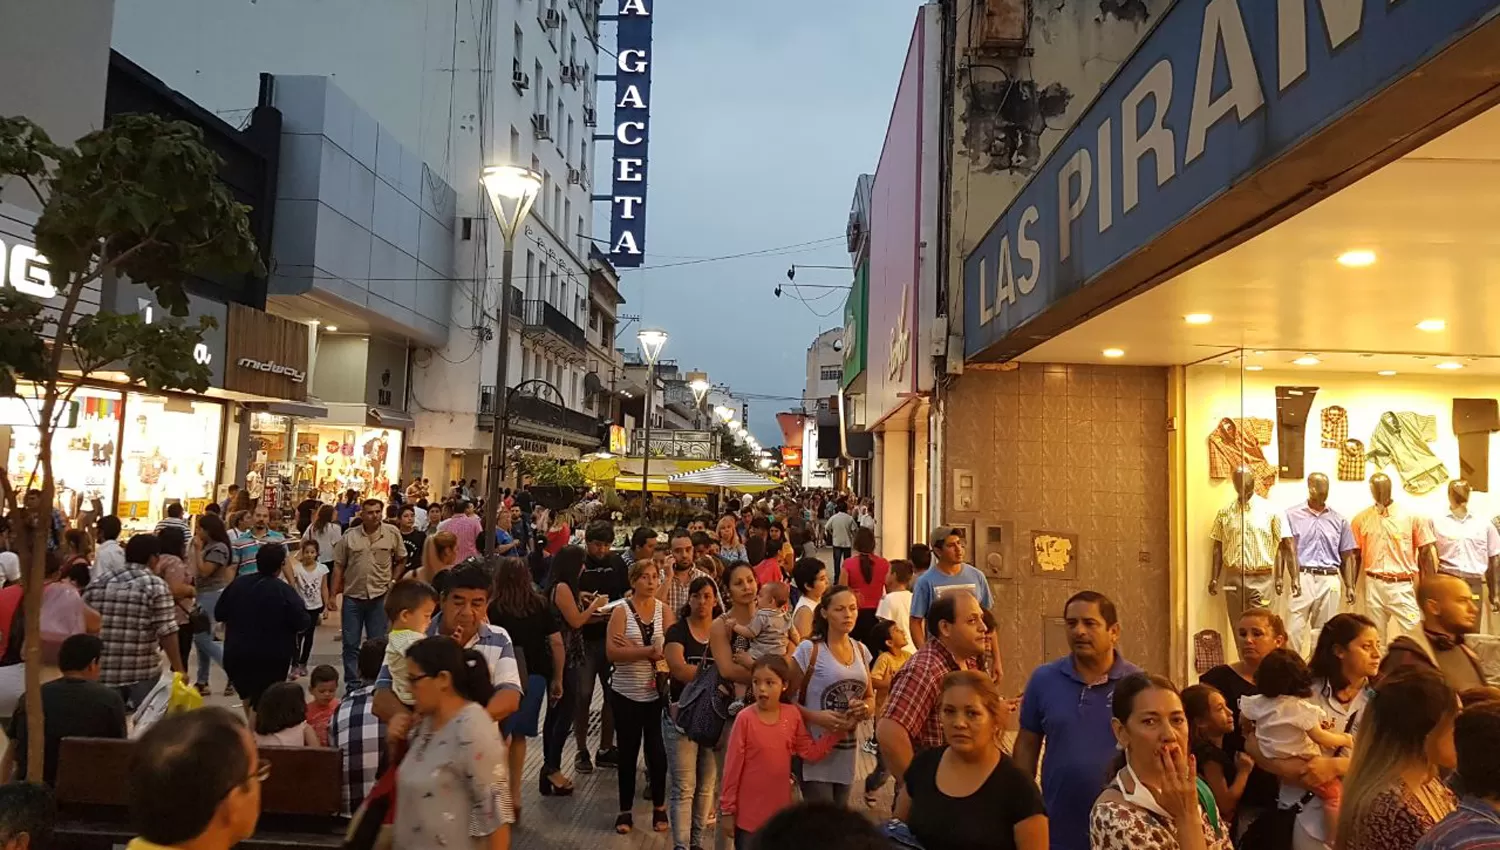 La peatonal de calle Mendoza se llenó de gente que quería comprar artículos escolares para mañana. LA GACETA / SANTIAGO HERNÁNDEZ